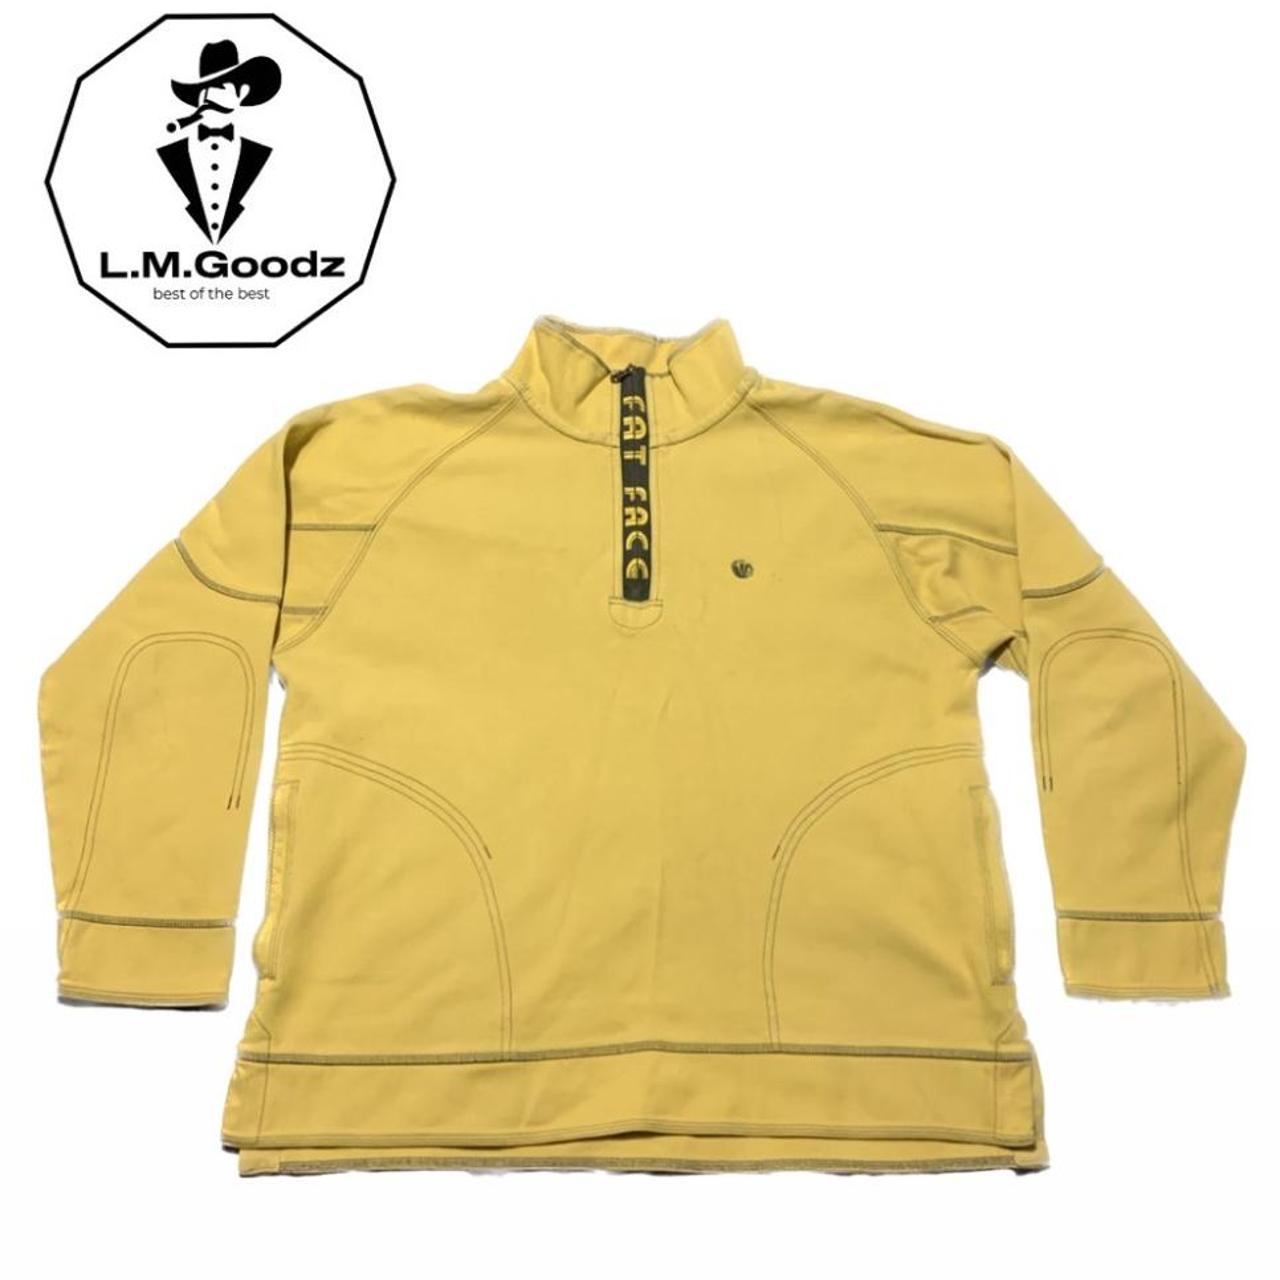 Fat Face yellow quarter-zip sweatshirt with contrast... - Depop